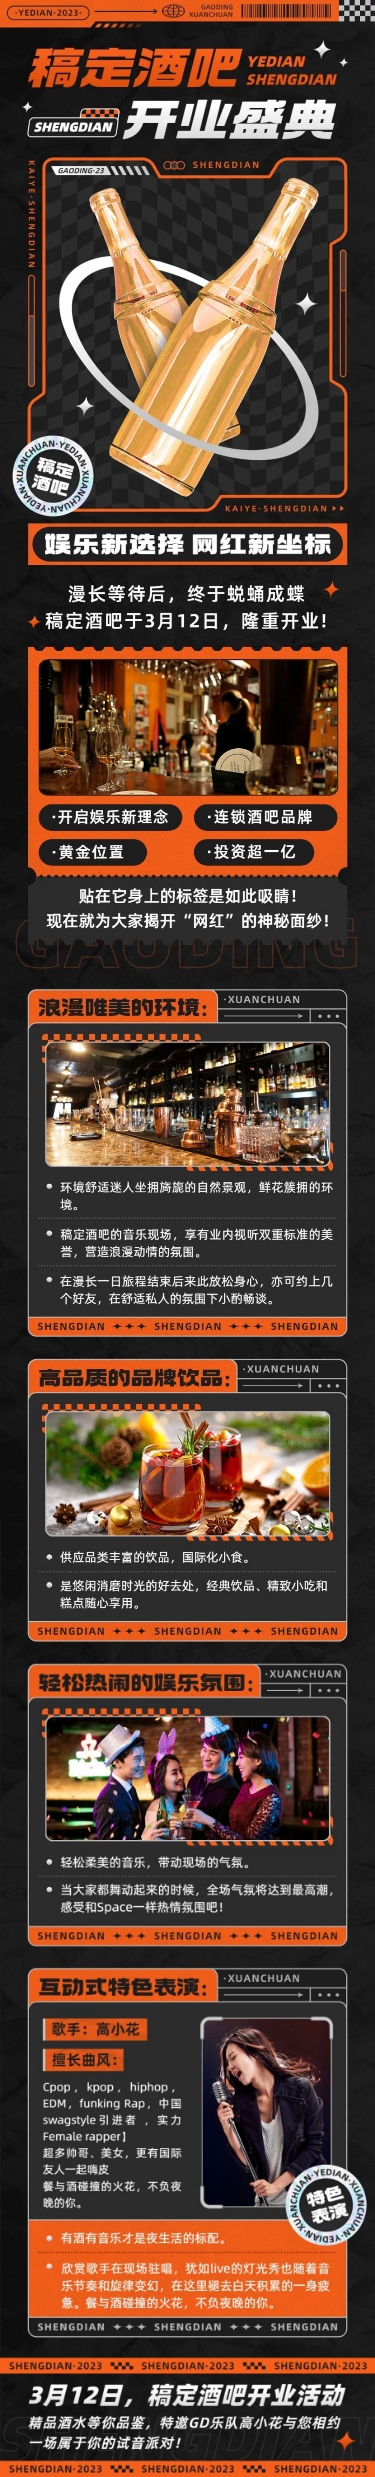 夜店酒吧开业活动宣传微信文章长图预览效果